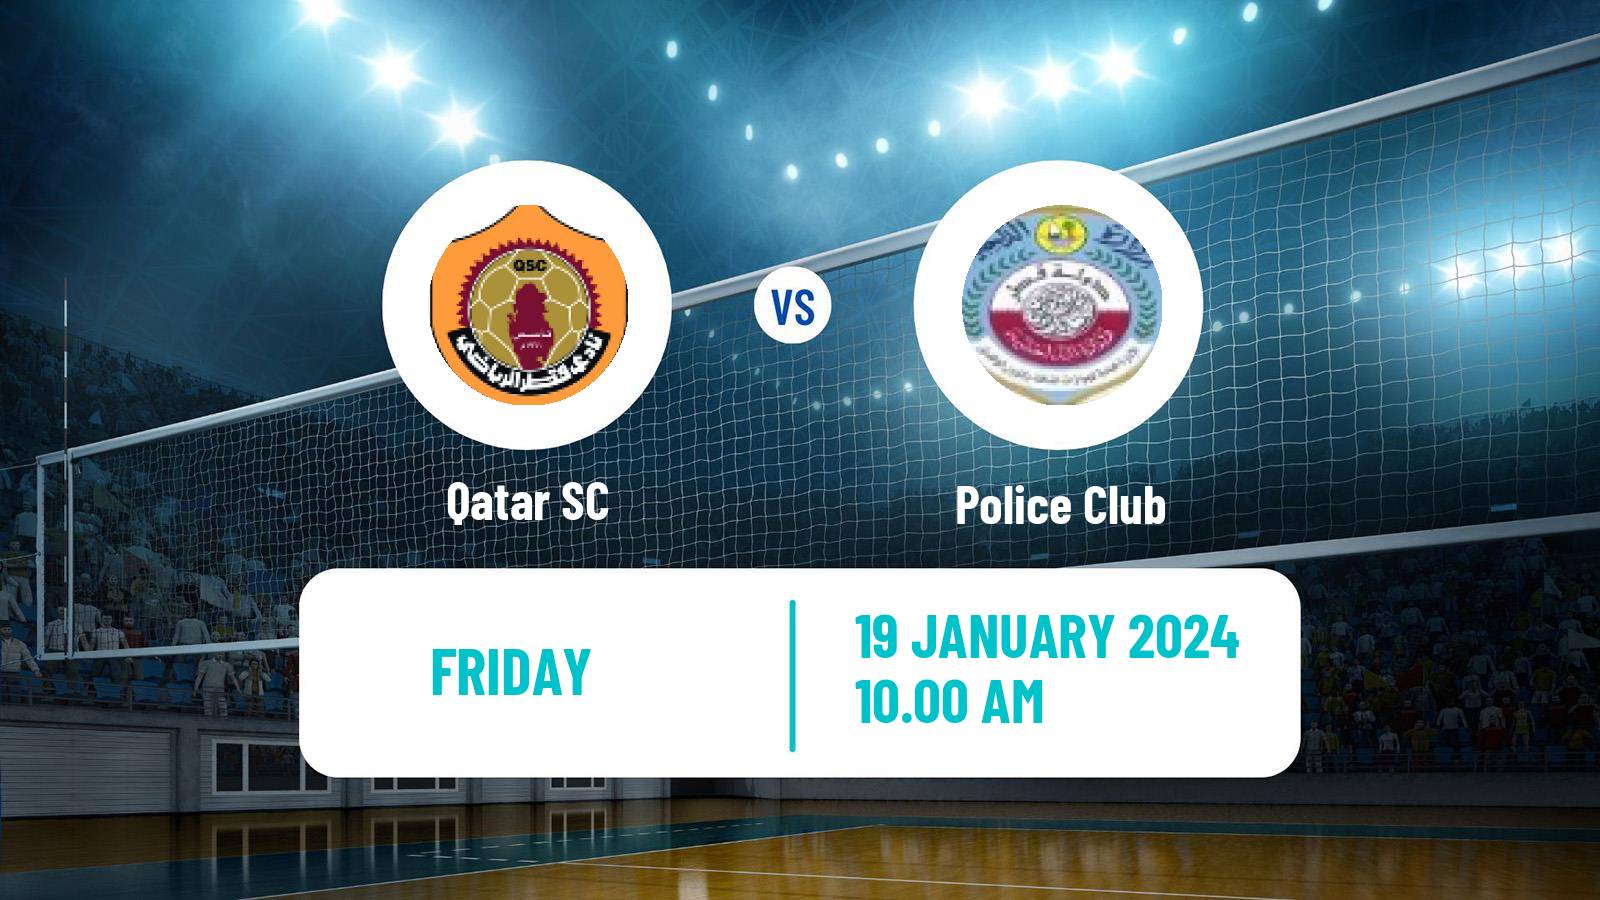 Volleyball Qatar Volleyball League Qatar SC - Police Club